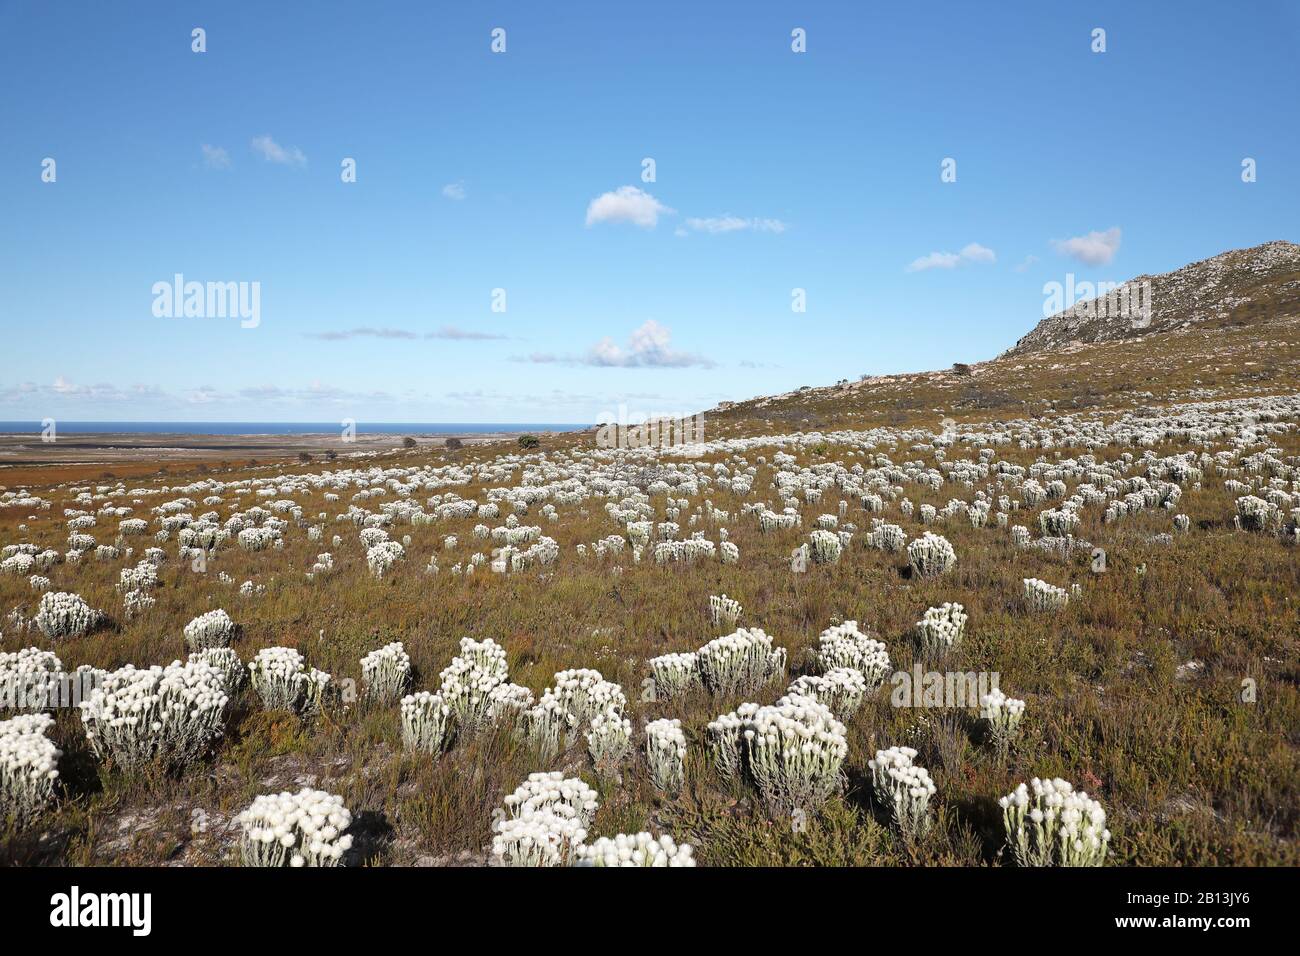 Immerwährender Schnee (Syncarpha vestita), reichlich blühender Immerwährender Schnee, Südafrika, Westkappisch, Tafelberg Nationalpark, Kap der Guten Hoffnung Stockfoto